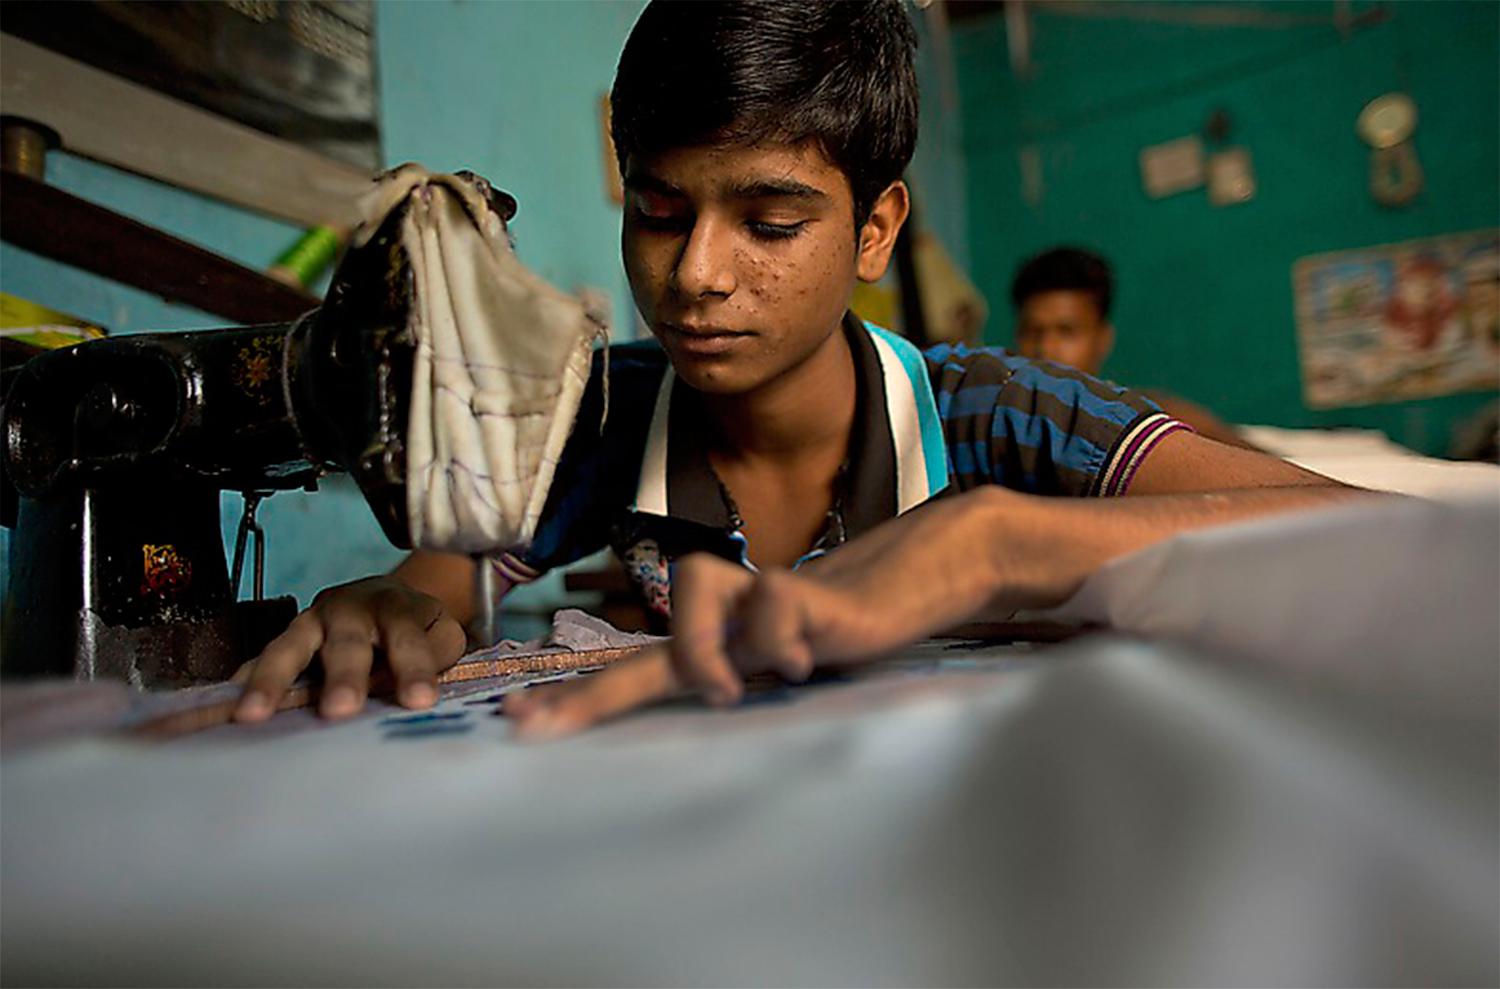 Barnarbete under slavliknande former förekommer fortfarande i länder som Indien och Pakistan. Foto: AP